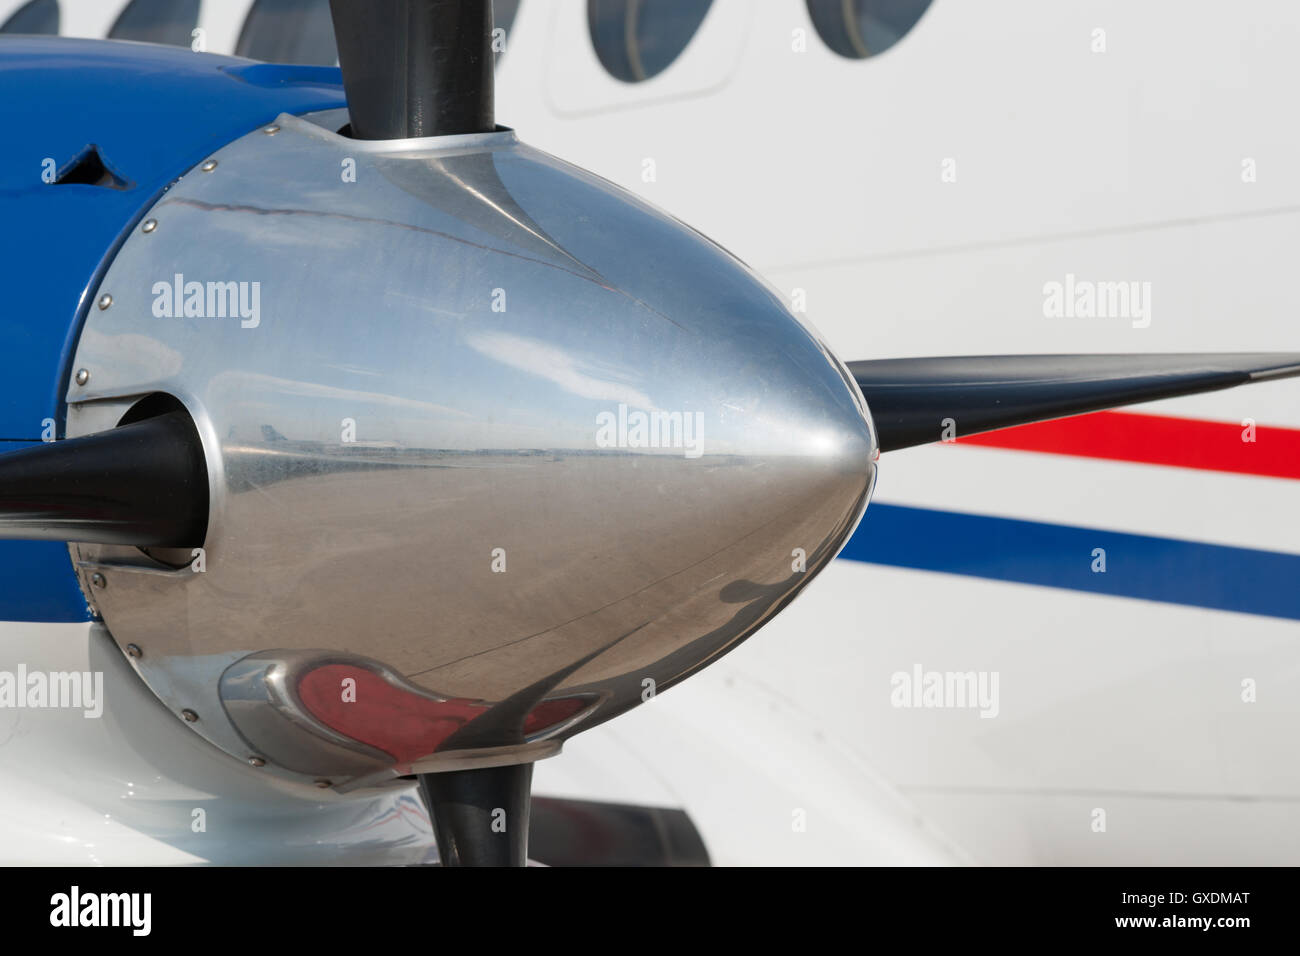 Spinner von einem Turbo-Prop-Motor eines modernen Flugzeugs vor dem Hintergrund eines Hauptteil oder Rumpf des Flugzeugs. Stockfoto